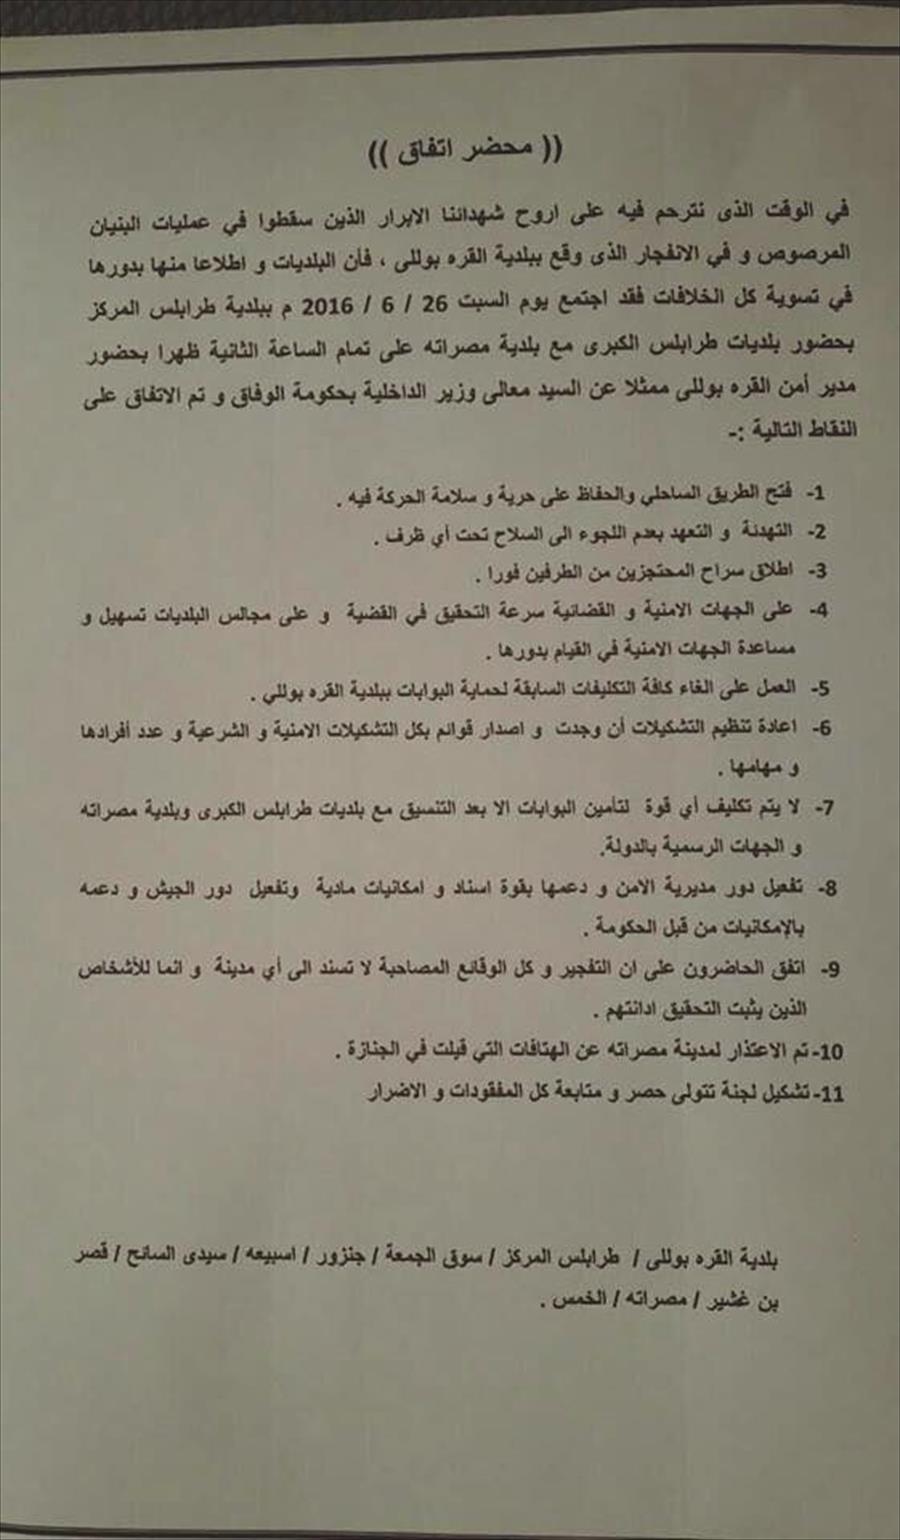 اتفاق بين بلديات طرابلس الكبرى ومصراتة على تسوية الخلافات